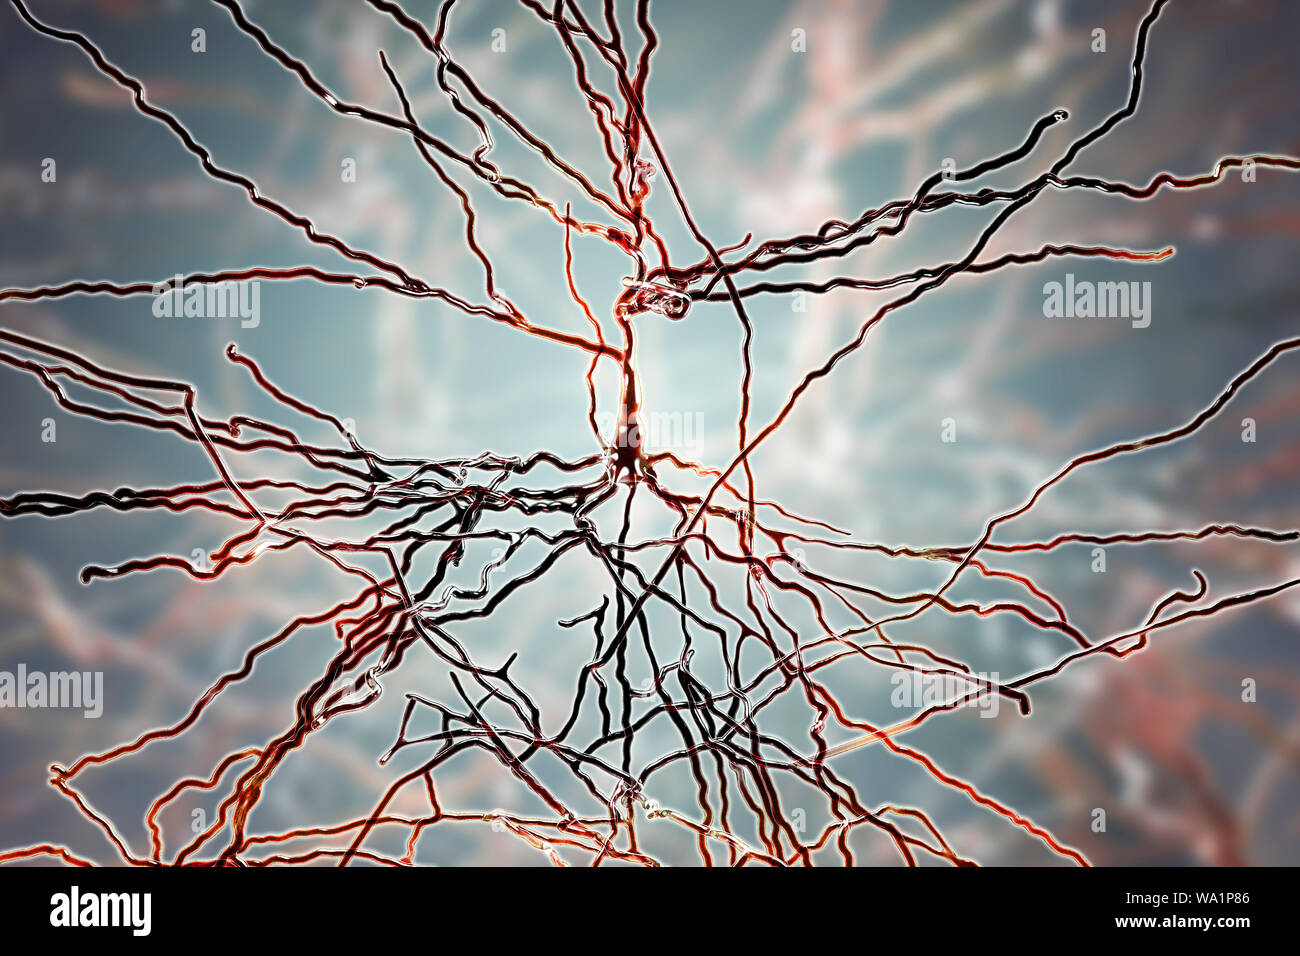 Neuroni piramidali. Illustrazione della piramide di cellule nervose dalla corteccia cerebrale del cervello. Cellule piramidali sono così denominata per la loro triangolari di corpi cellulari. Ciascuna cella corpo presenta numerosi processi (dendriti) che raccogliere e trasmettere informazioni da altre cellule nervose e le cellule sensoriali. Ogni cella corpo dispone anche di un assone conduce da esso attraverso la quale passa le informazioni ad altre cellule. Foto Stock